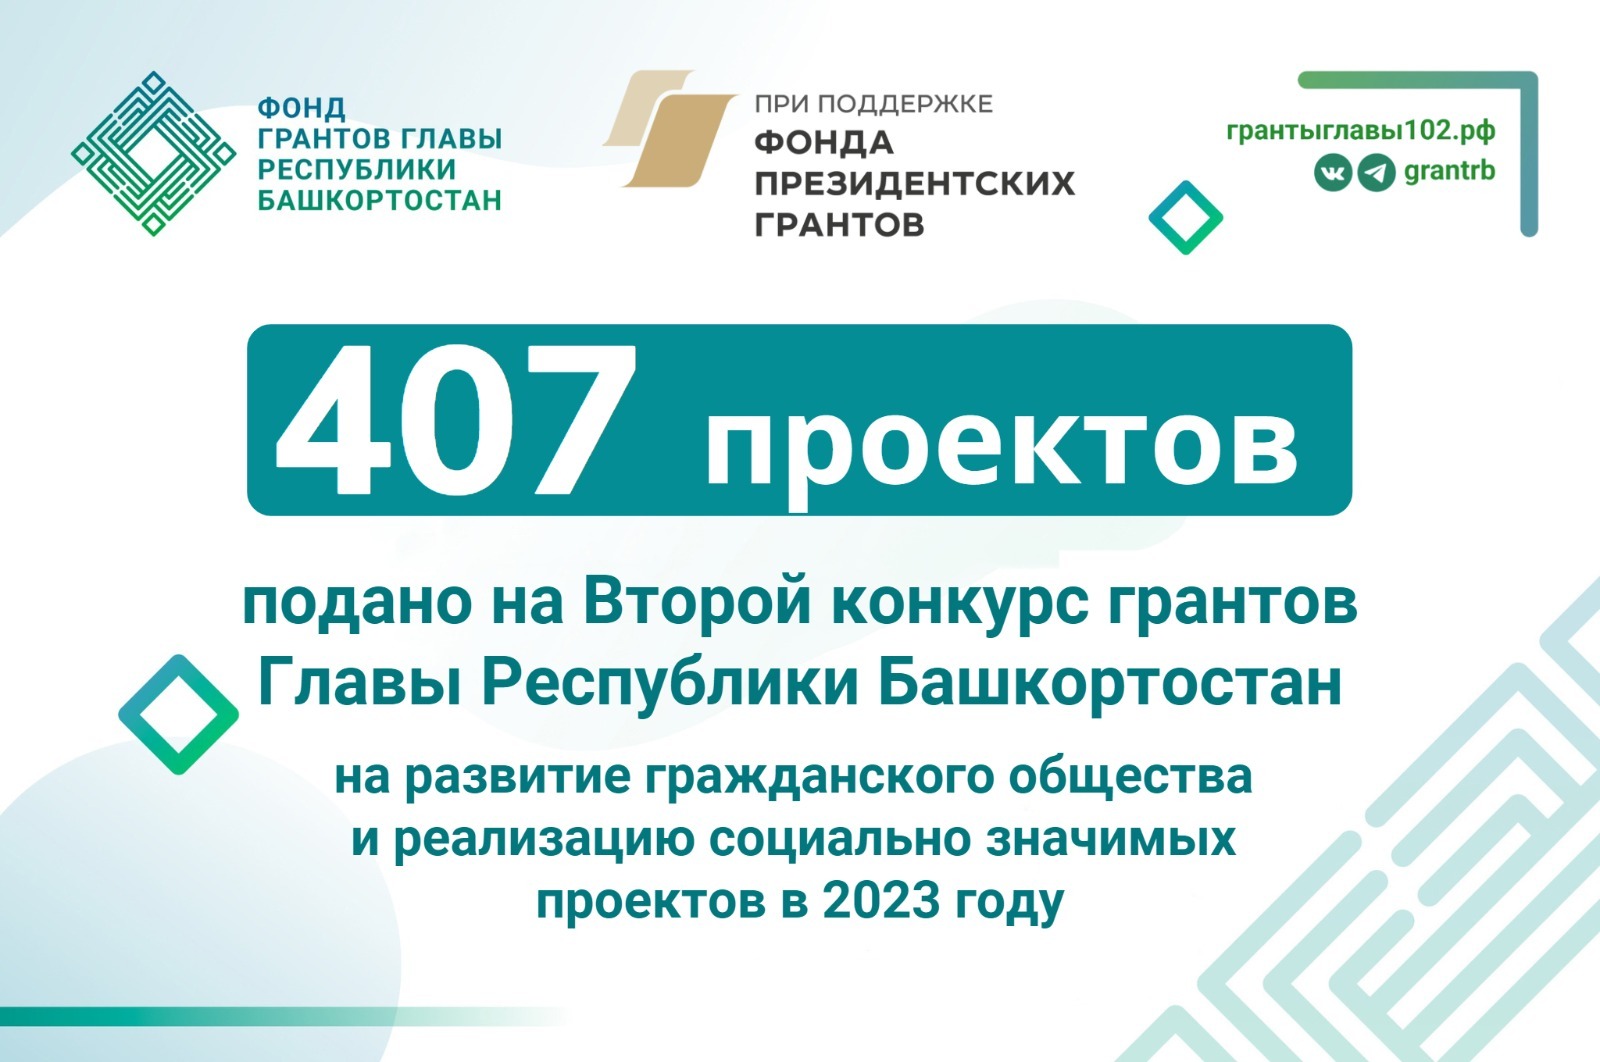 На конкурс грантов главы Республики Башкортостан поступило 407 заявок